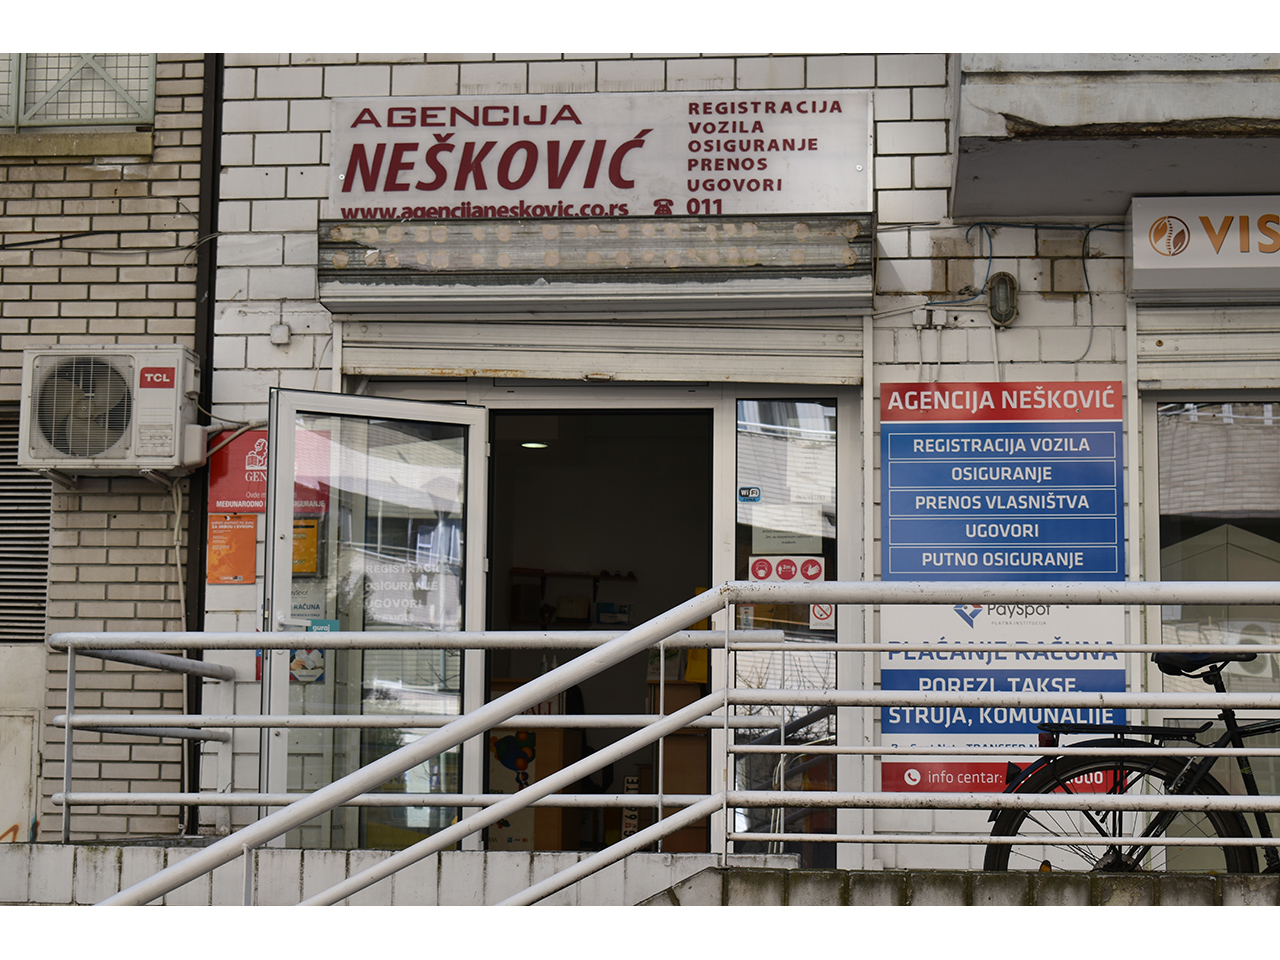 Slika 2 - AGENCIJA NEŠKOVIĆ Registracija vozila Beograd